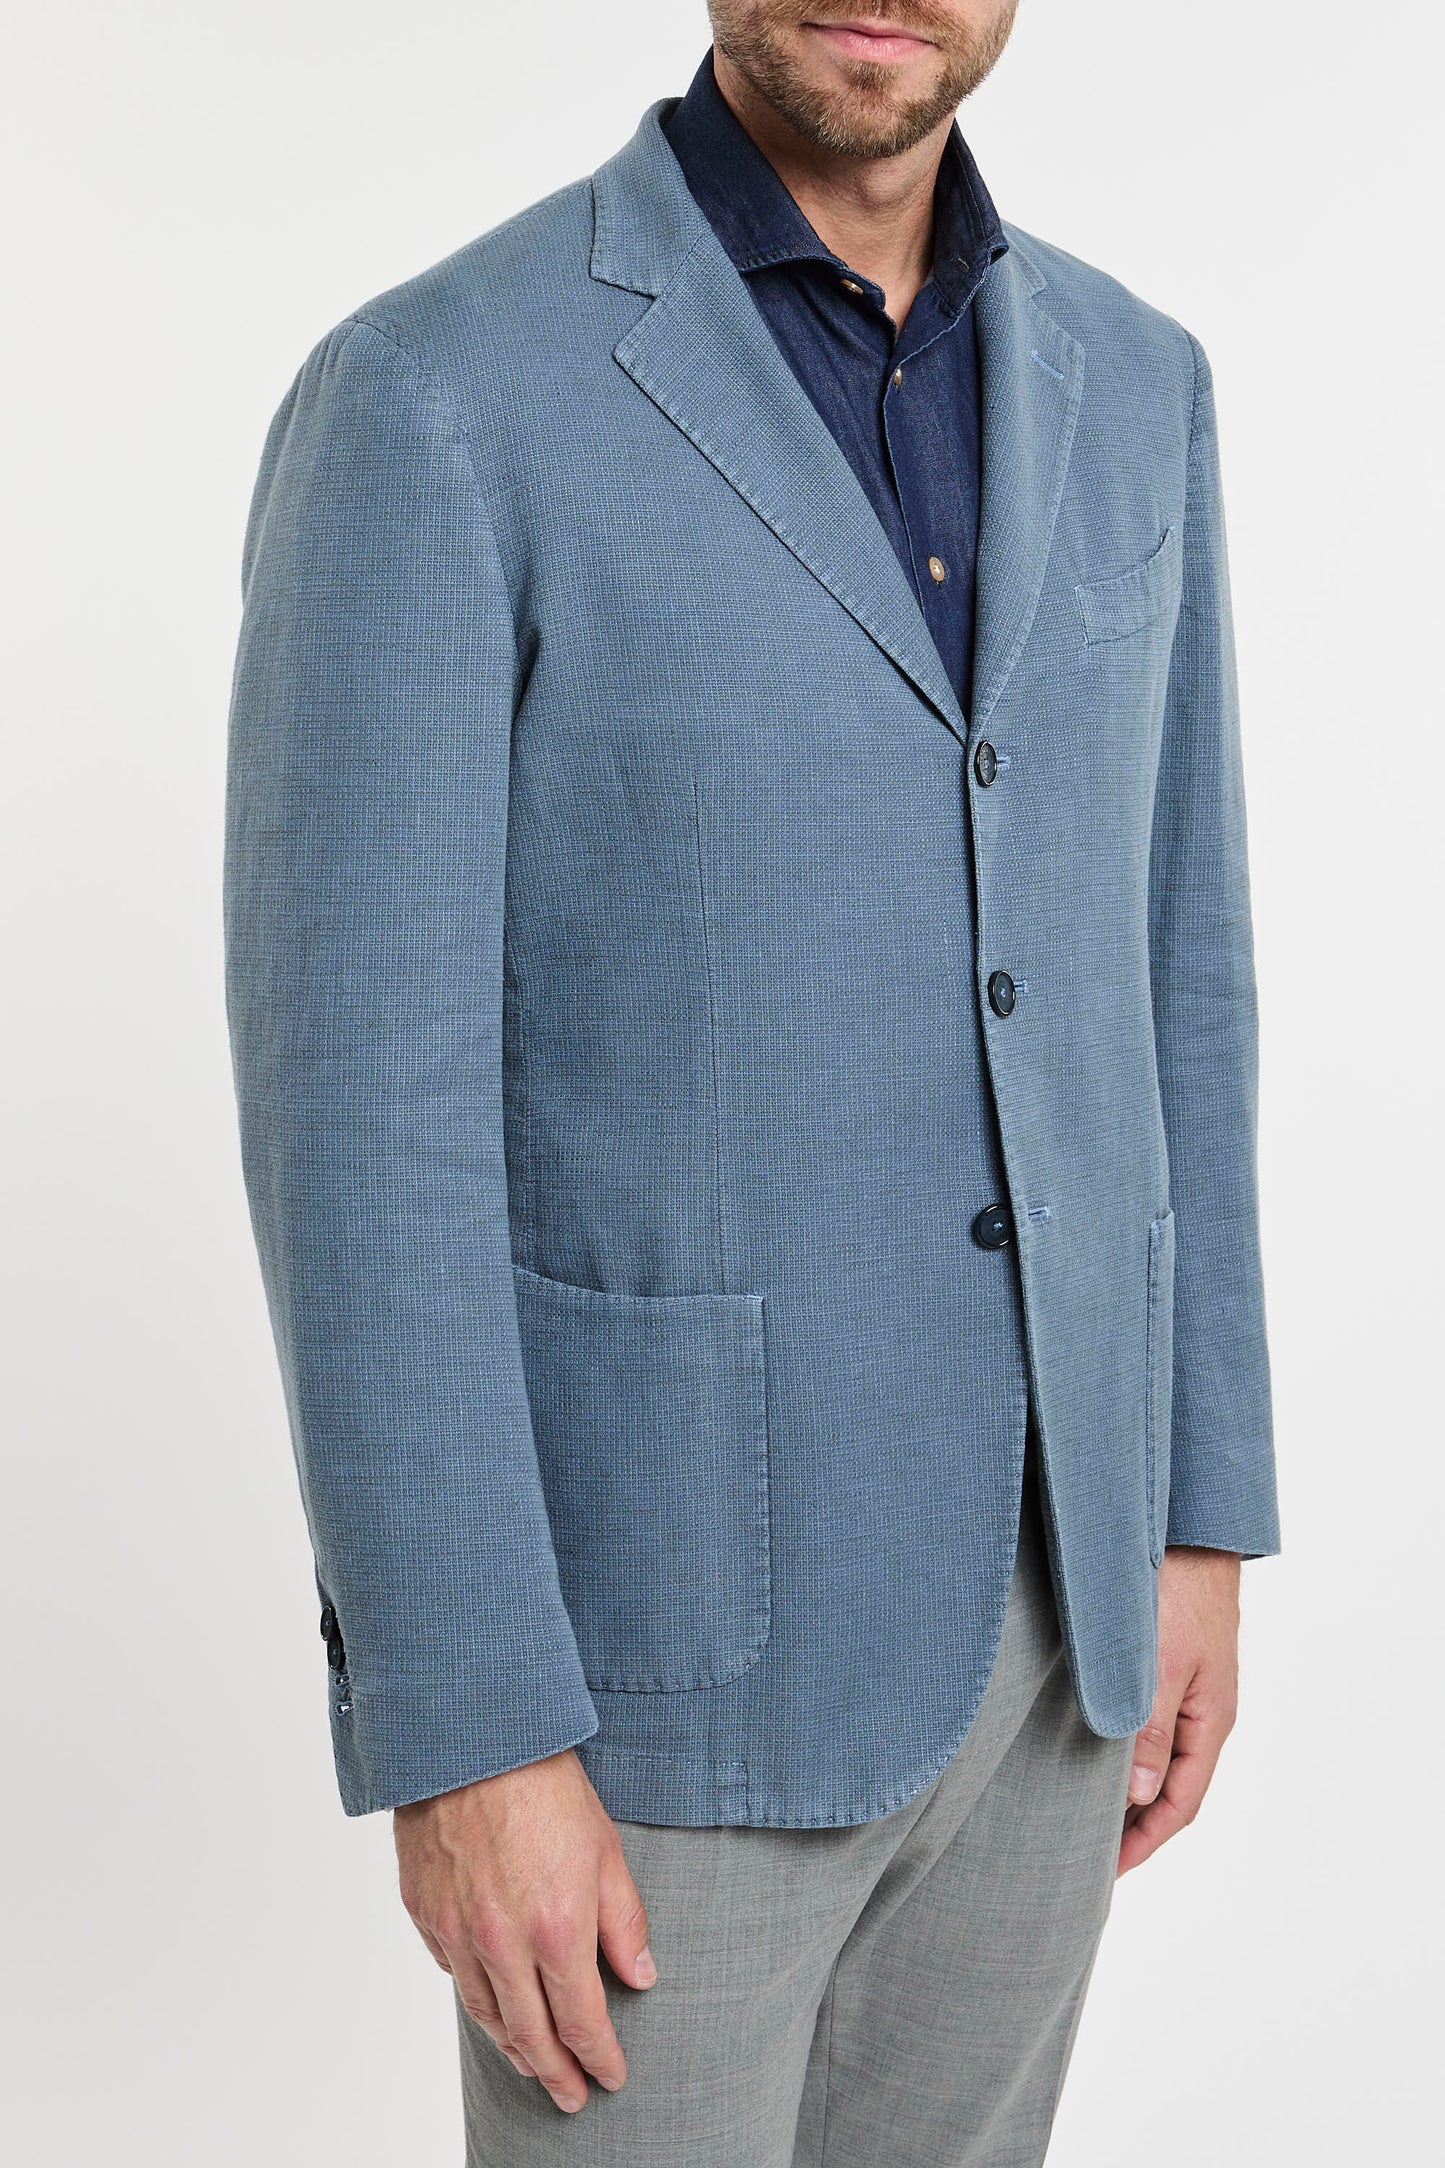  Santaniello Multicolor Jacket In Cotton/linen Blend Azzurro Uomo - 4